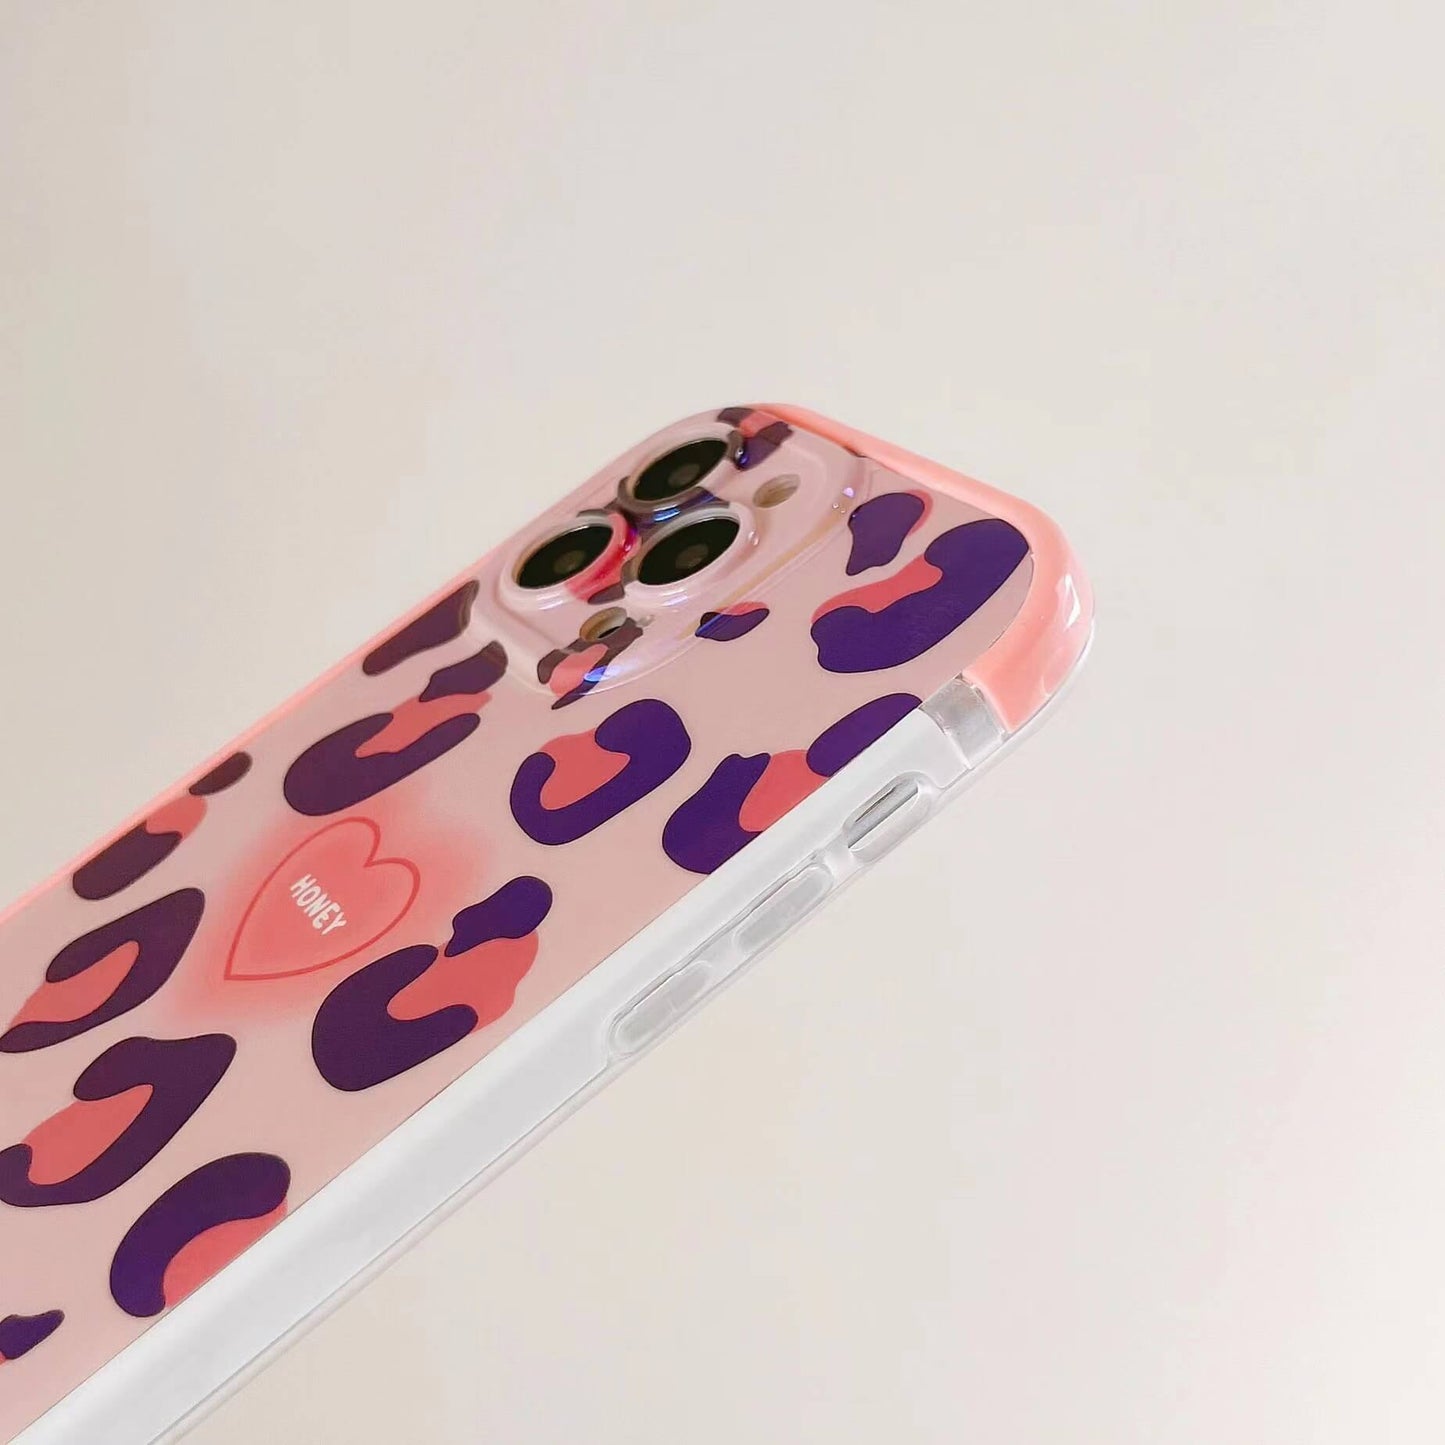 Vinilo o funda para iPhone Blu-ray de esquinas redondeadas de leopardo rosa